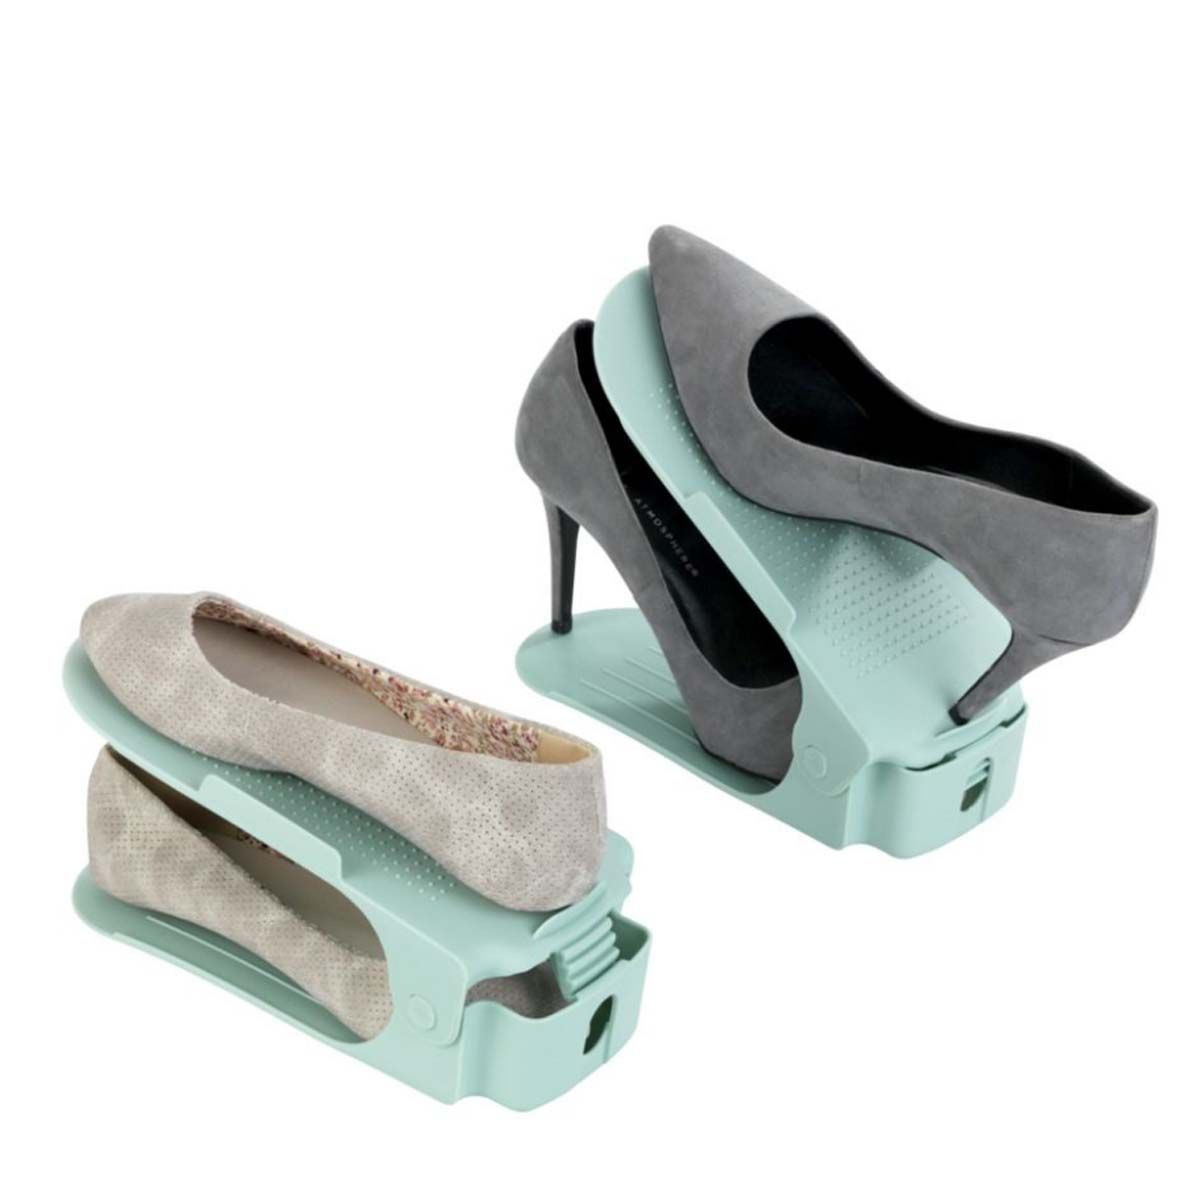 Range-chaussures à poser gris, 8 paires maximum H.32 x l.55 cm